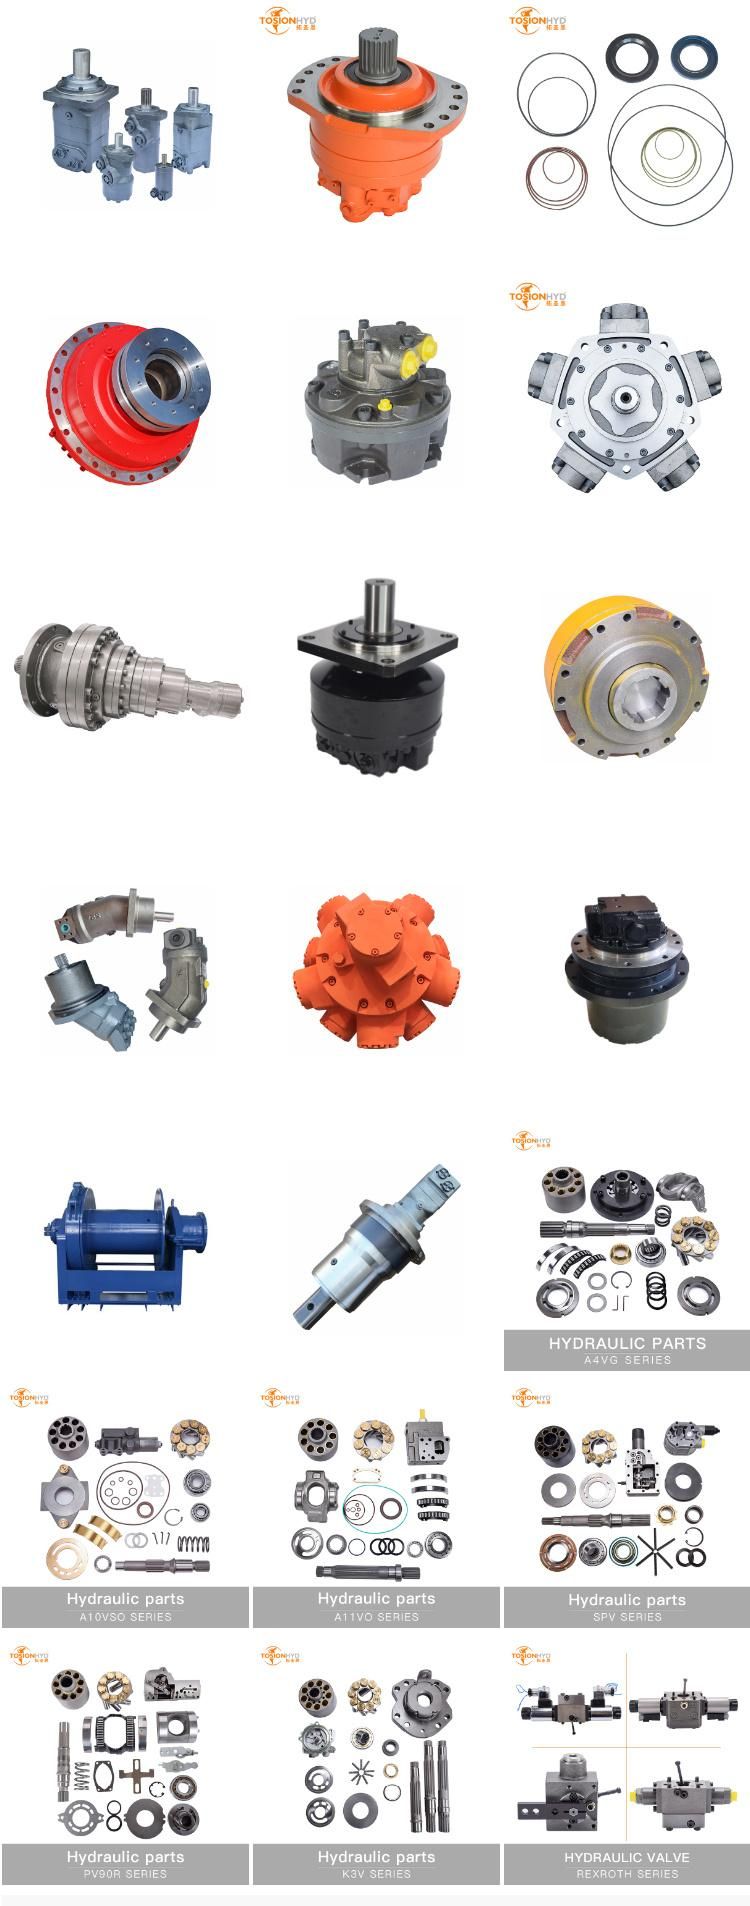 A8V107 Ls3400FL2 Ls2800 S280 Ls2800f12 Ls2800fj Excavator Hydraulic Pump Spare Parts with Sumitomo